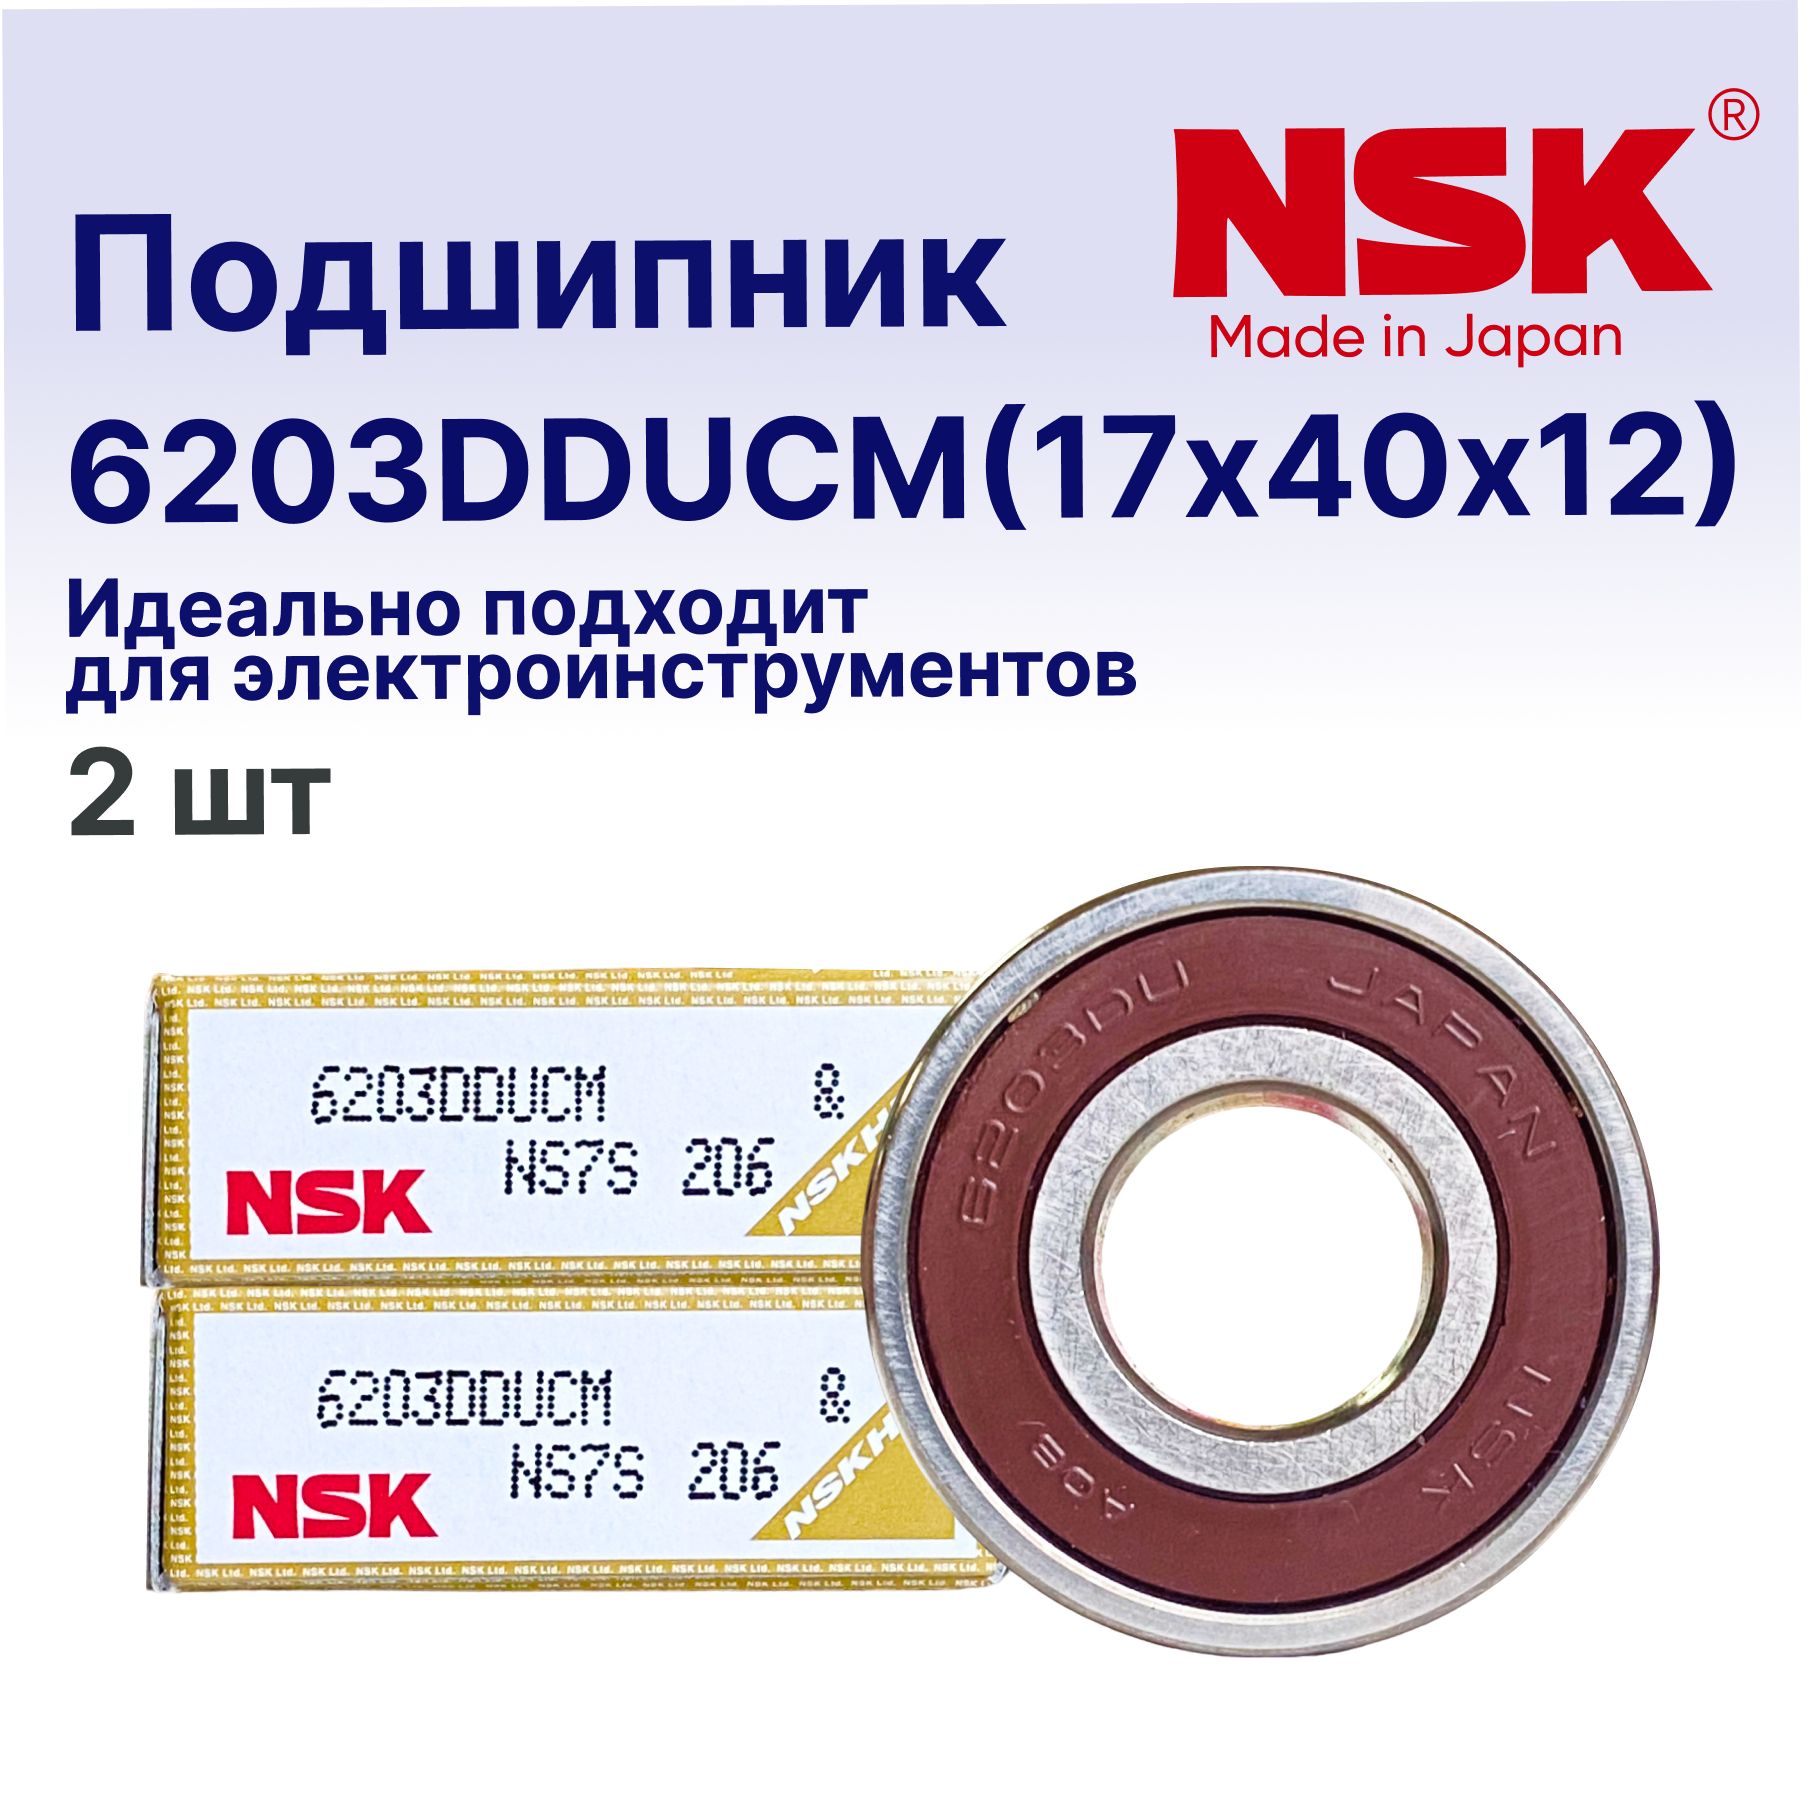 ПодшипникгенератораNSK6203(17x40x12)2шт.